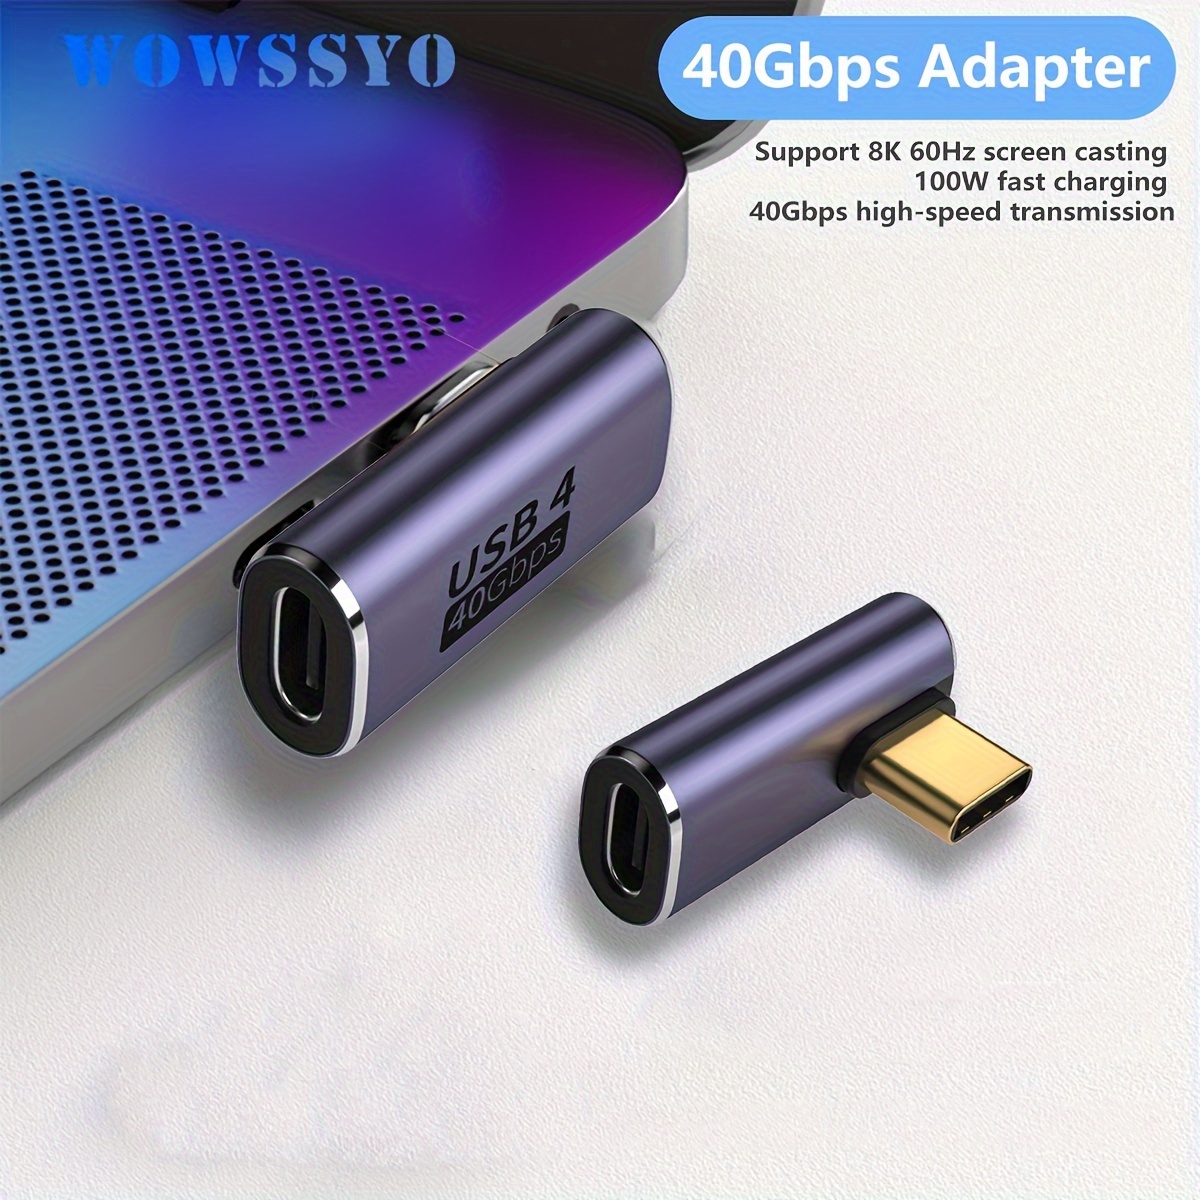 Type-C マグネット 変換 アダプタ USB4 MAX 140W データ転送 40Gbps 充電 ストレート L字型 L型 マグネット脱着 映像信号対応 USB C タイプ C